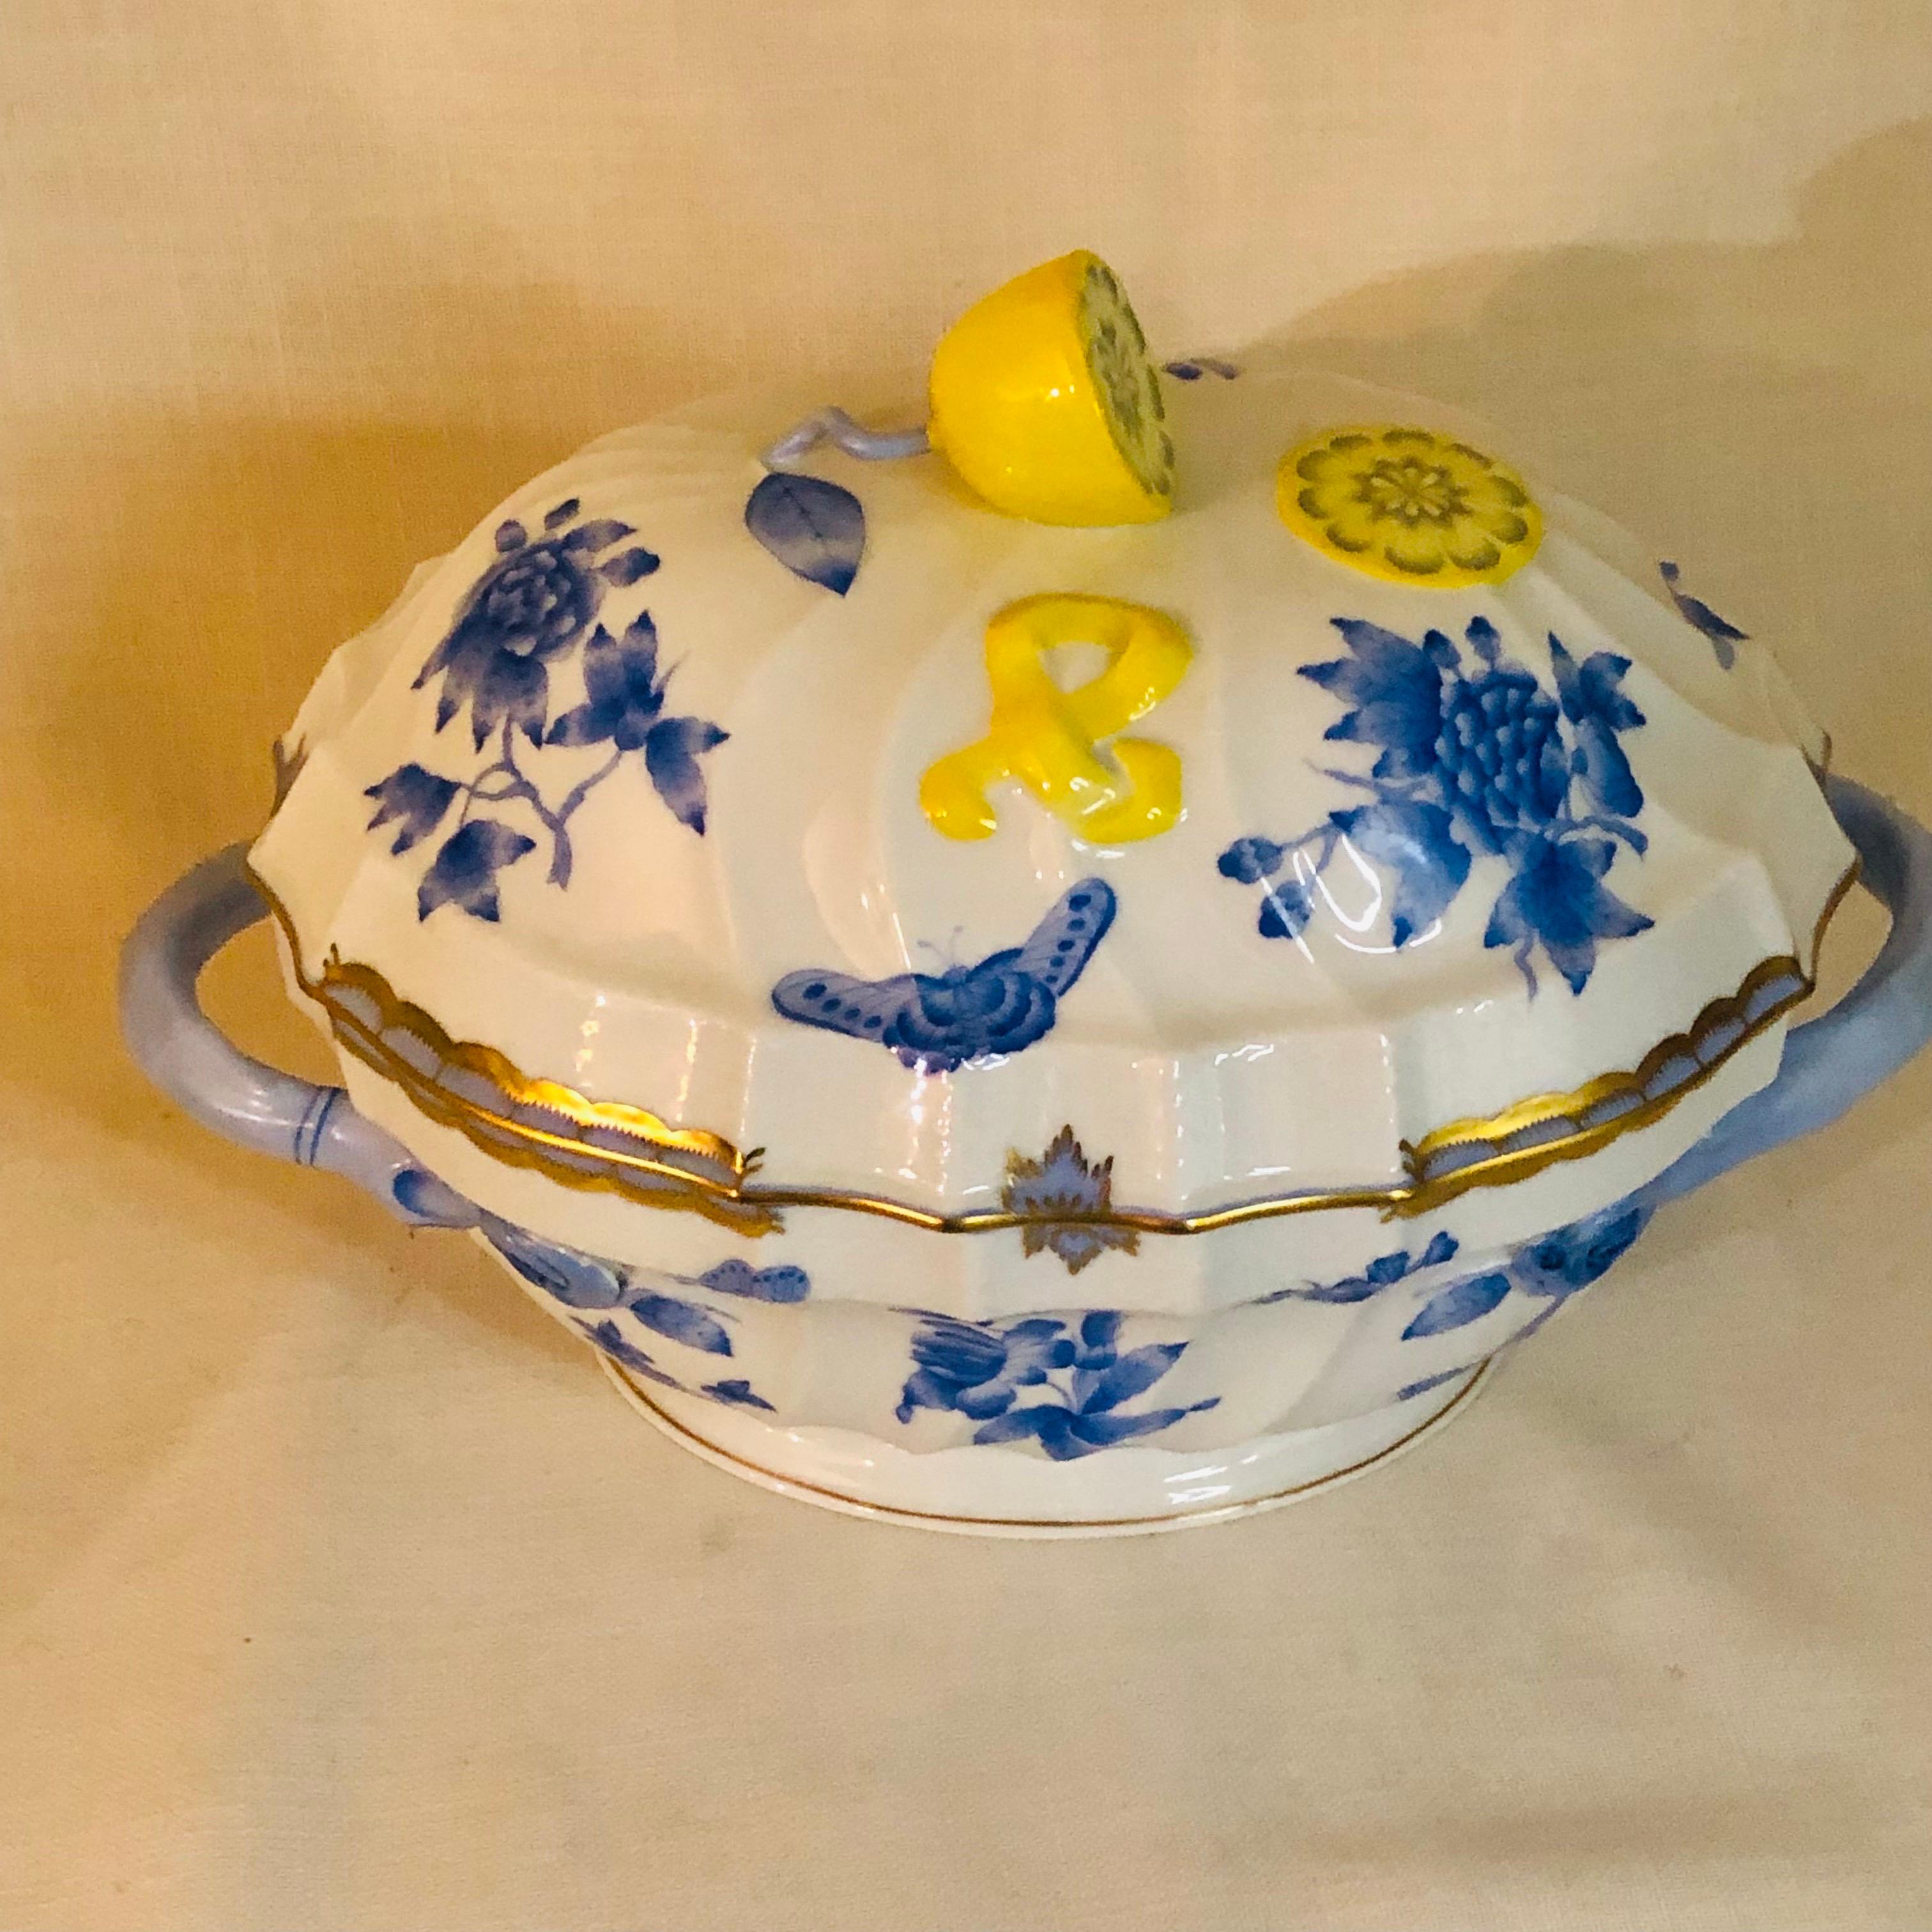 Il s'agit d'une magnifique soupière Fortuna de Herend peinte de papillons et de fleurs bleus sur un fond blanc avec des accents en or 24 carats. Sa couverture est ornée d'un magnifique citron. Ce serait une charmante pièce décorative sur la table de